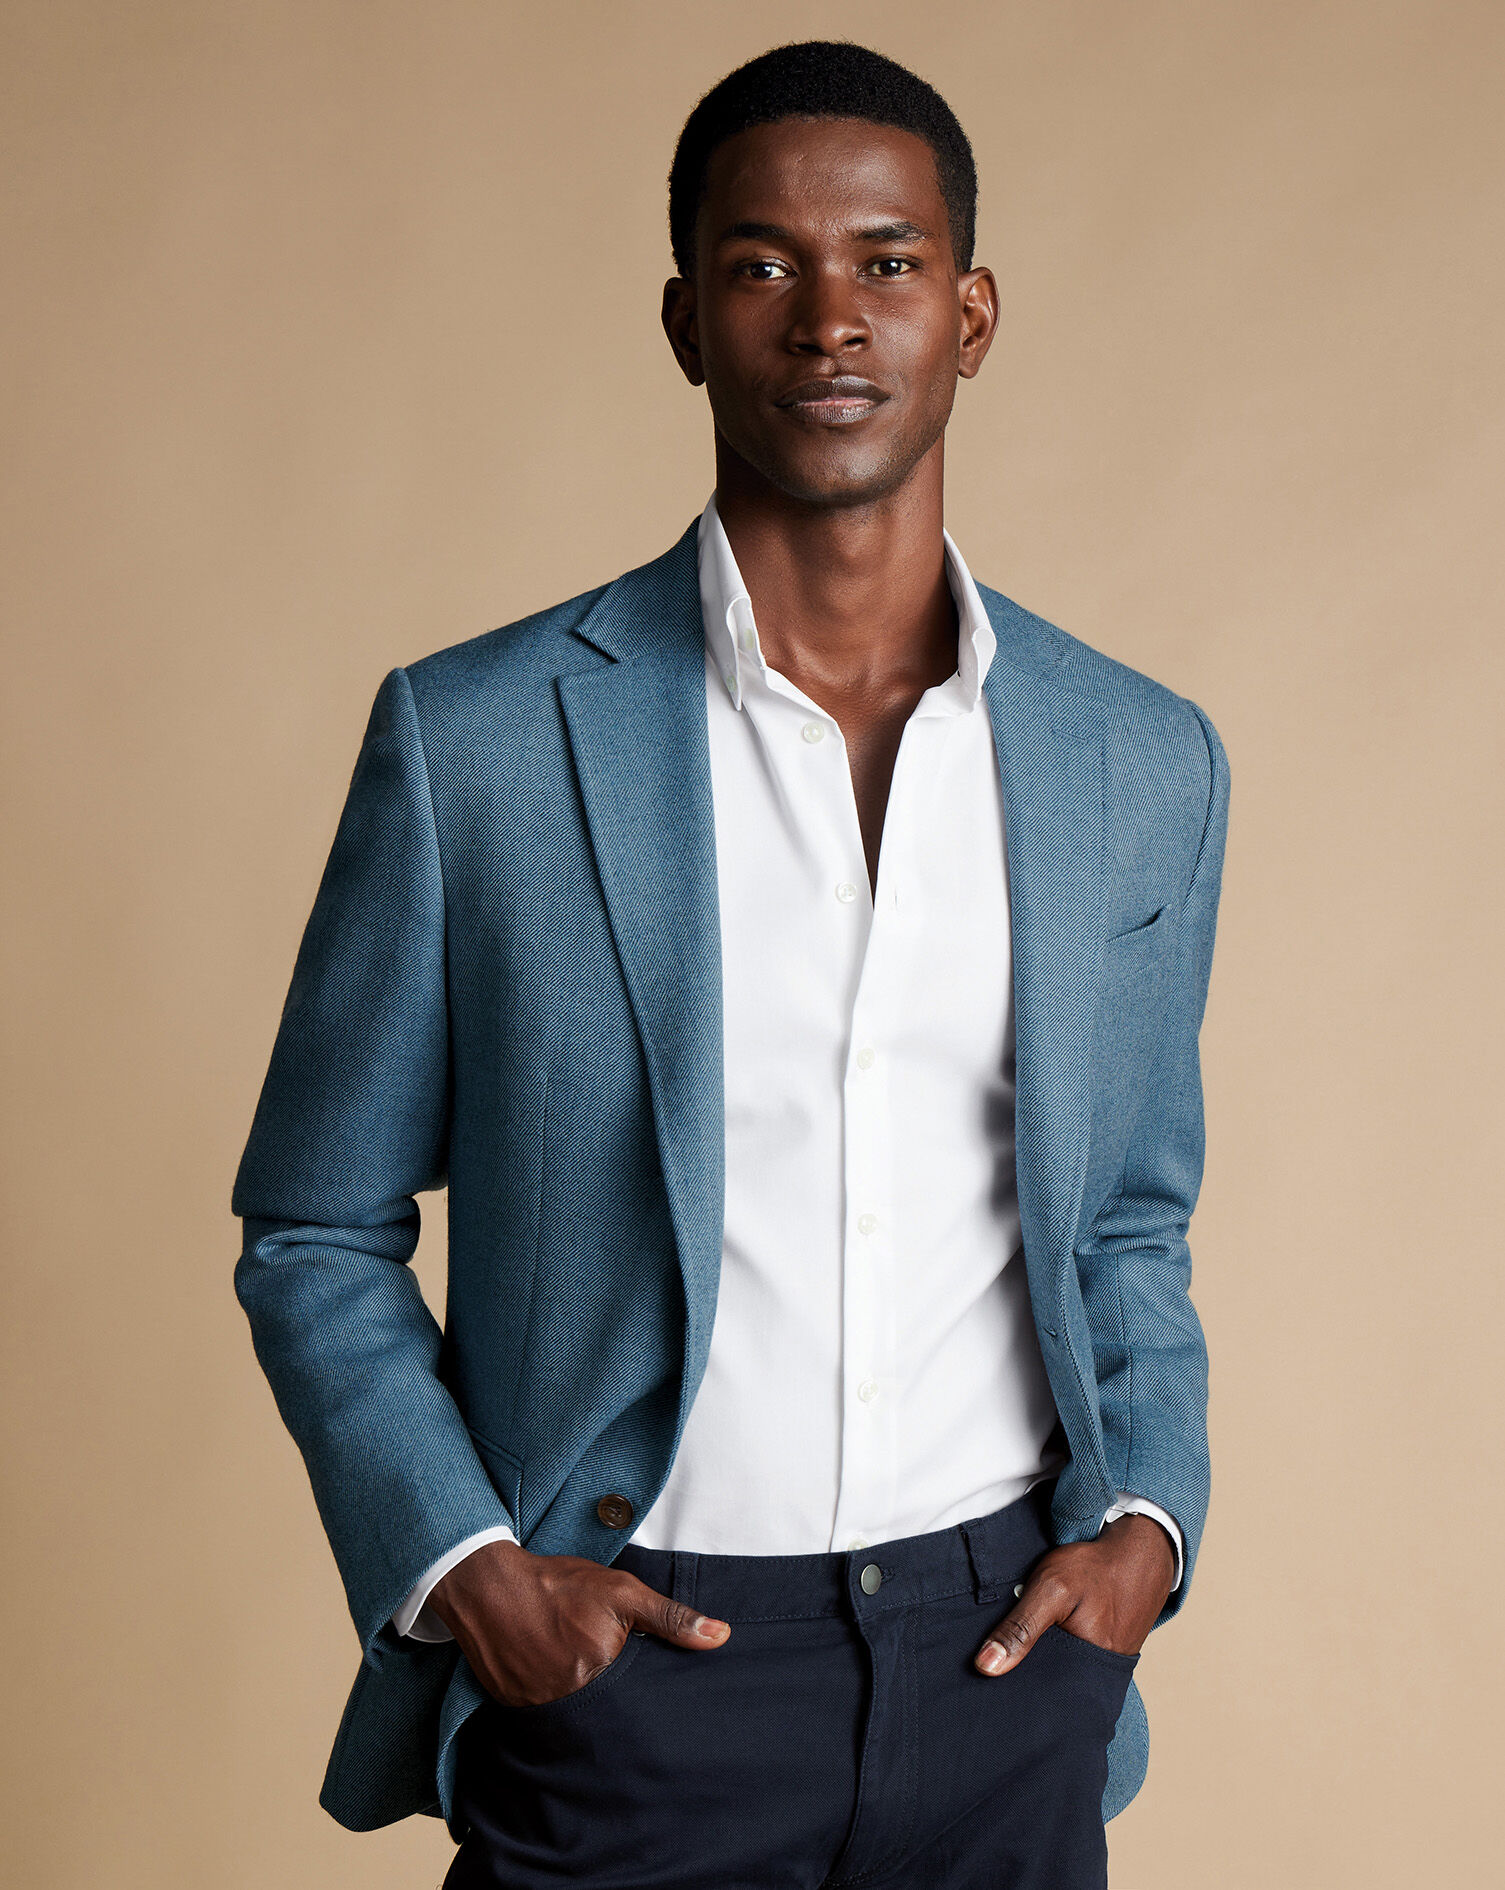 Trending Blue Blazer for Men l Shades of Men's Blue Blazer. – Men Deserve